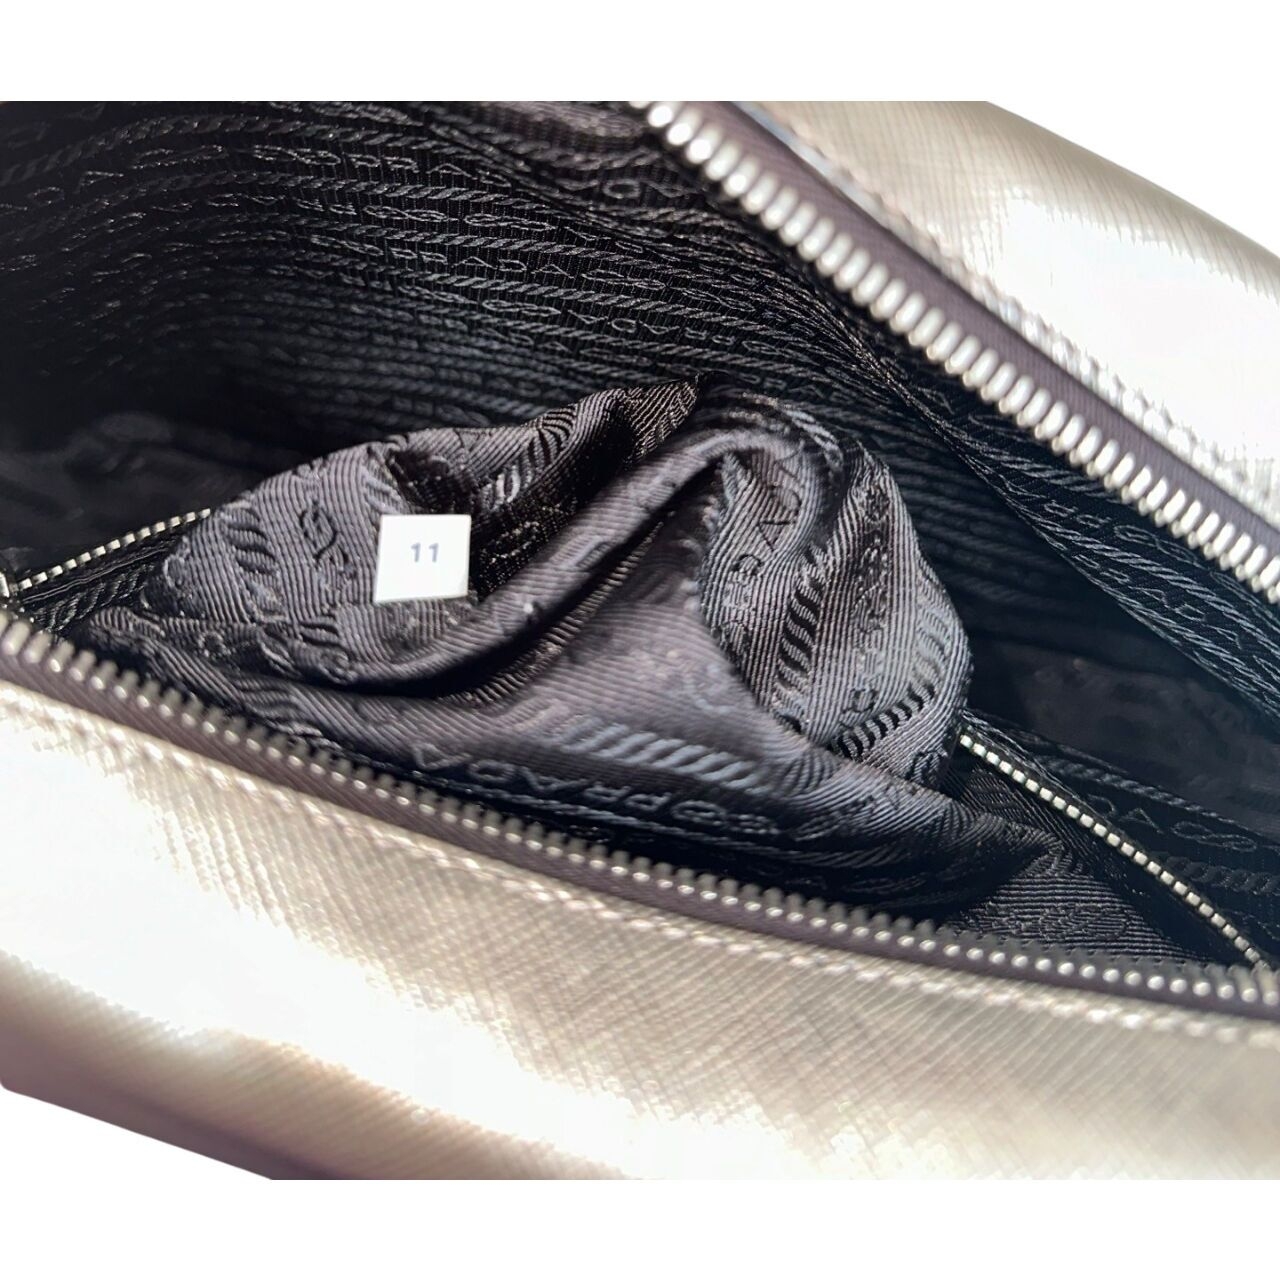 Prada Saffiano Lux Leather Silver Tote Bag